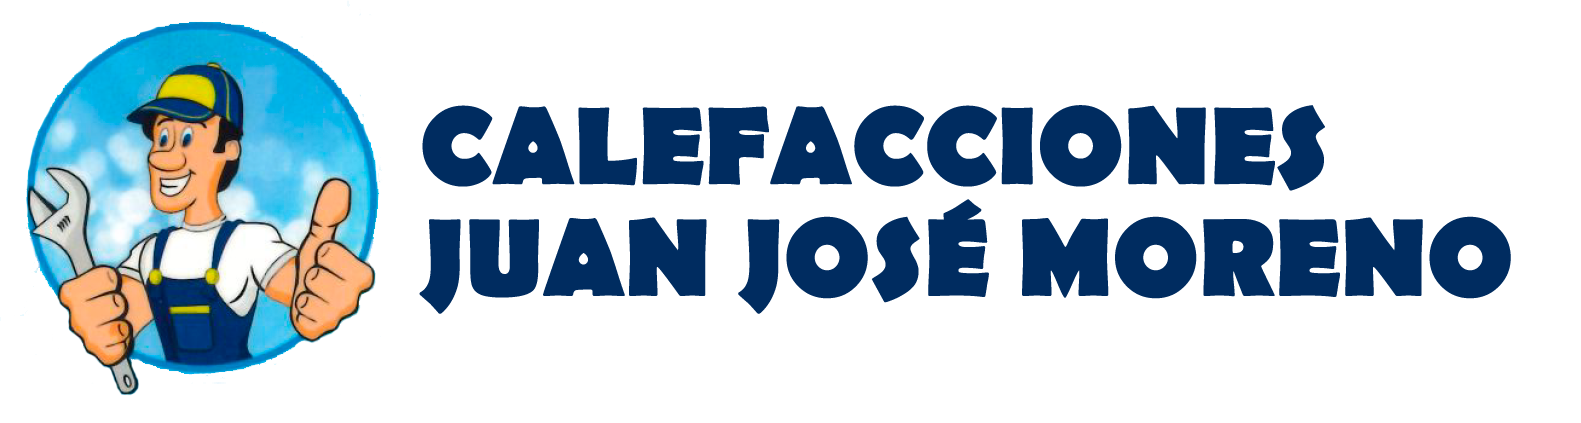 Calefacciones Juan José Moreno